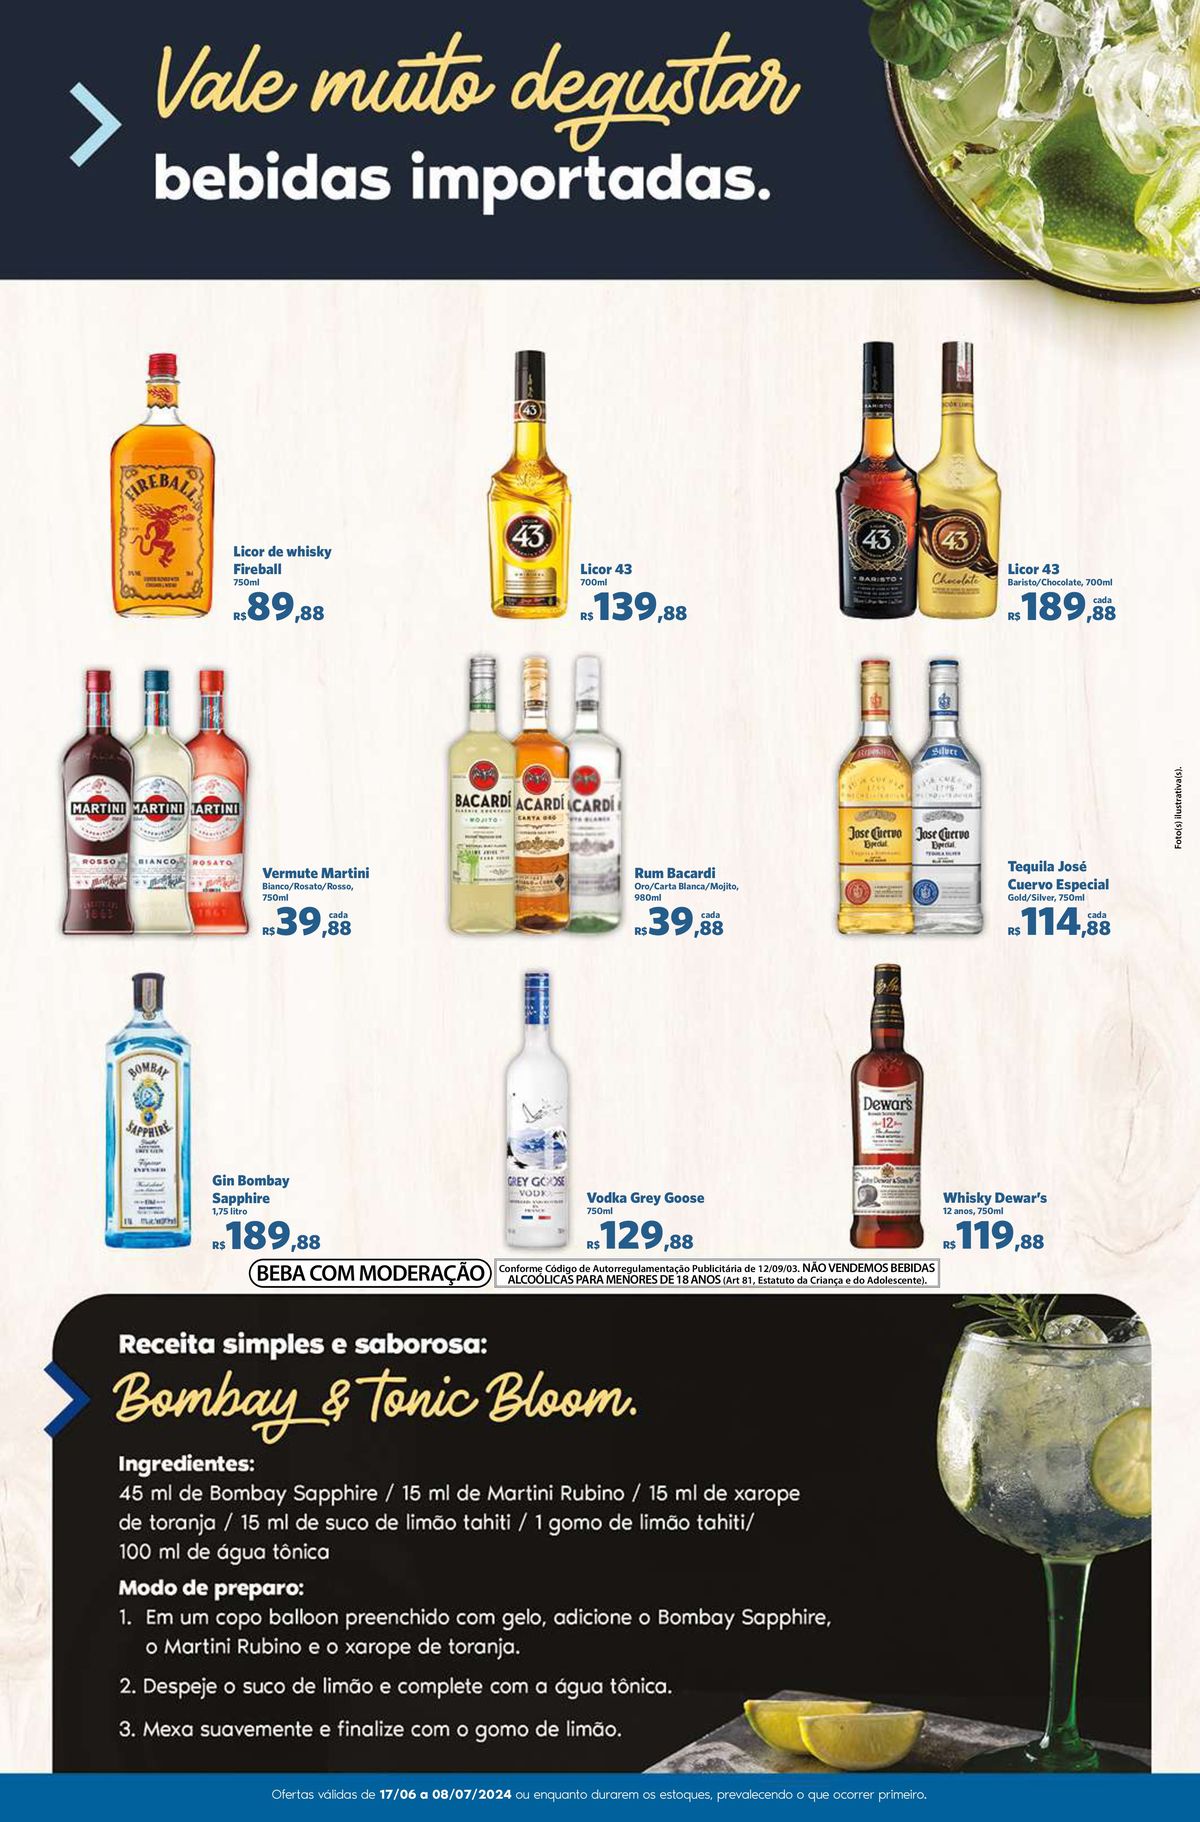 Bebidas Importadas em Promoção: Whisky, Vermute, Gin, Licor e Tequila